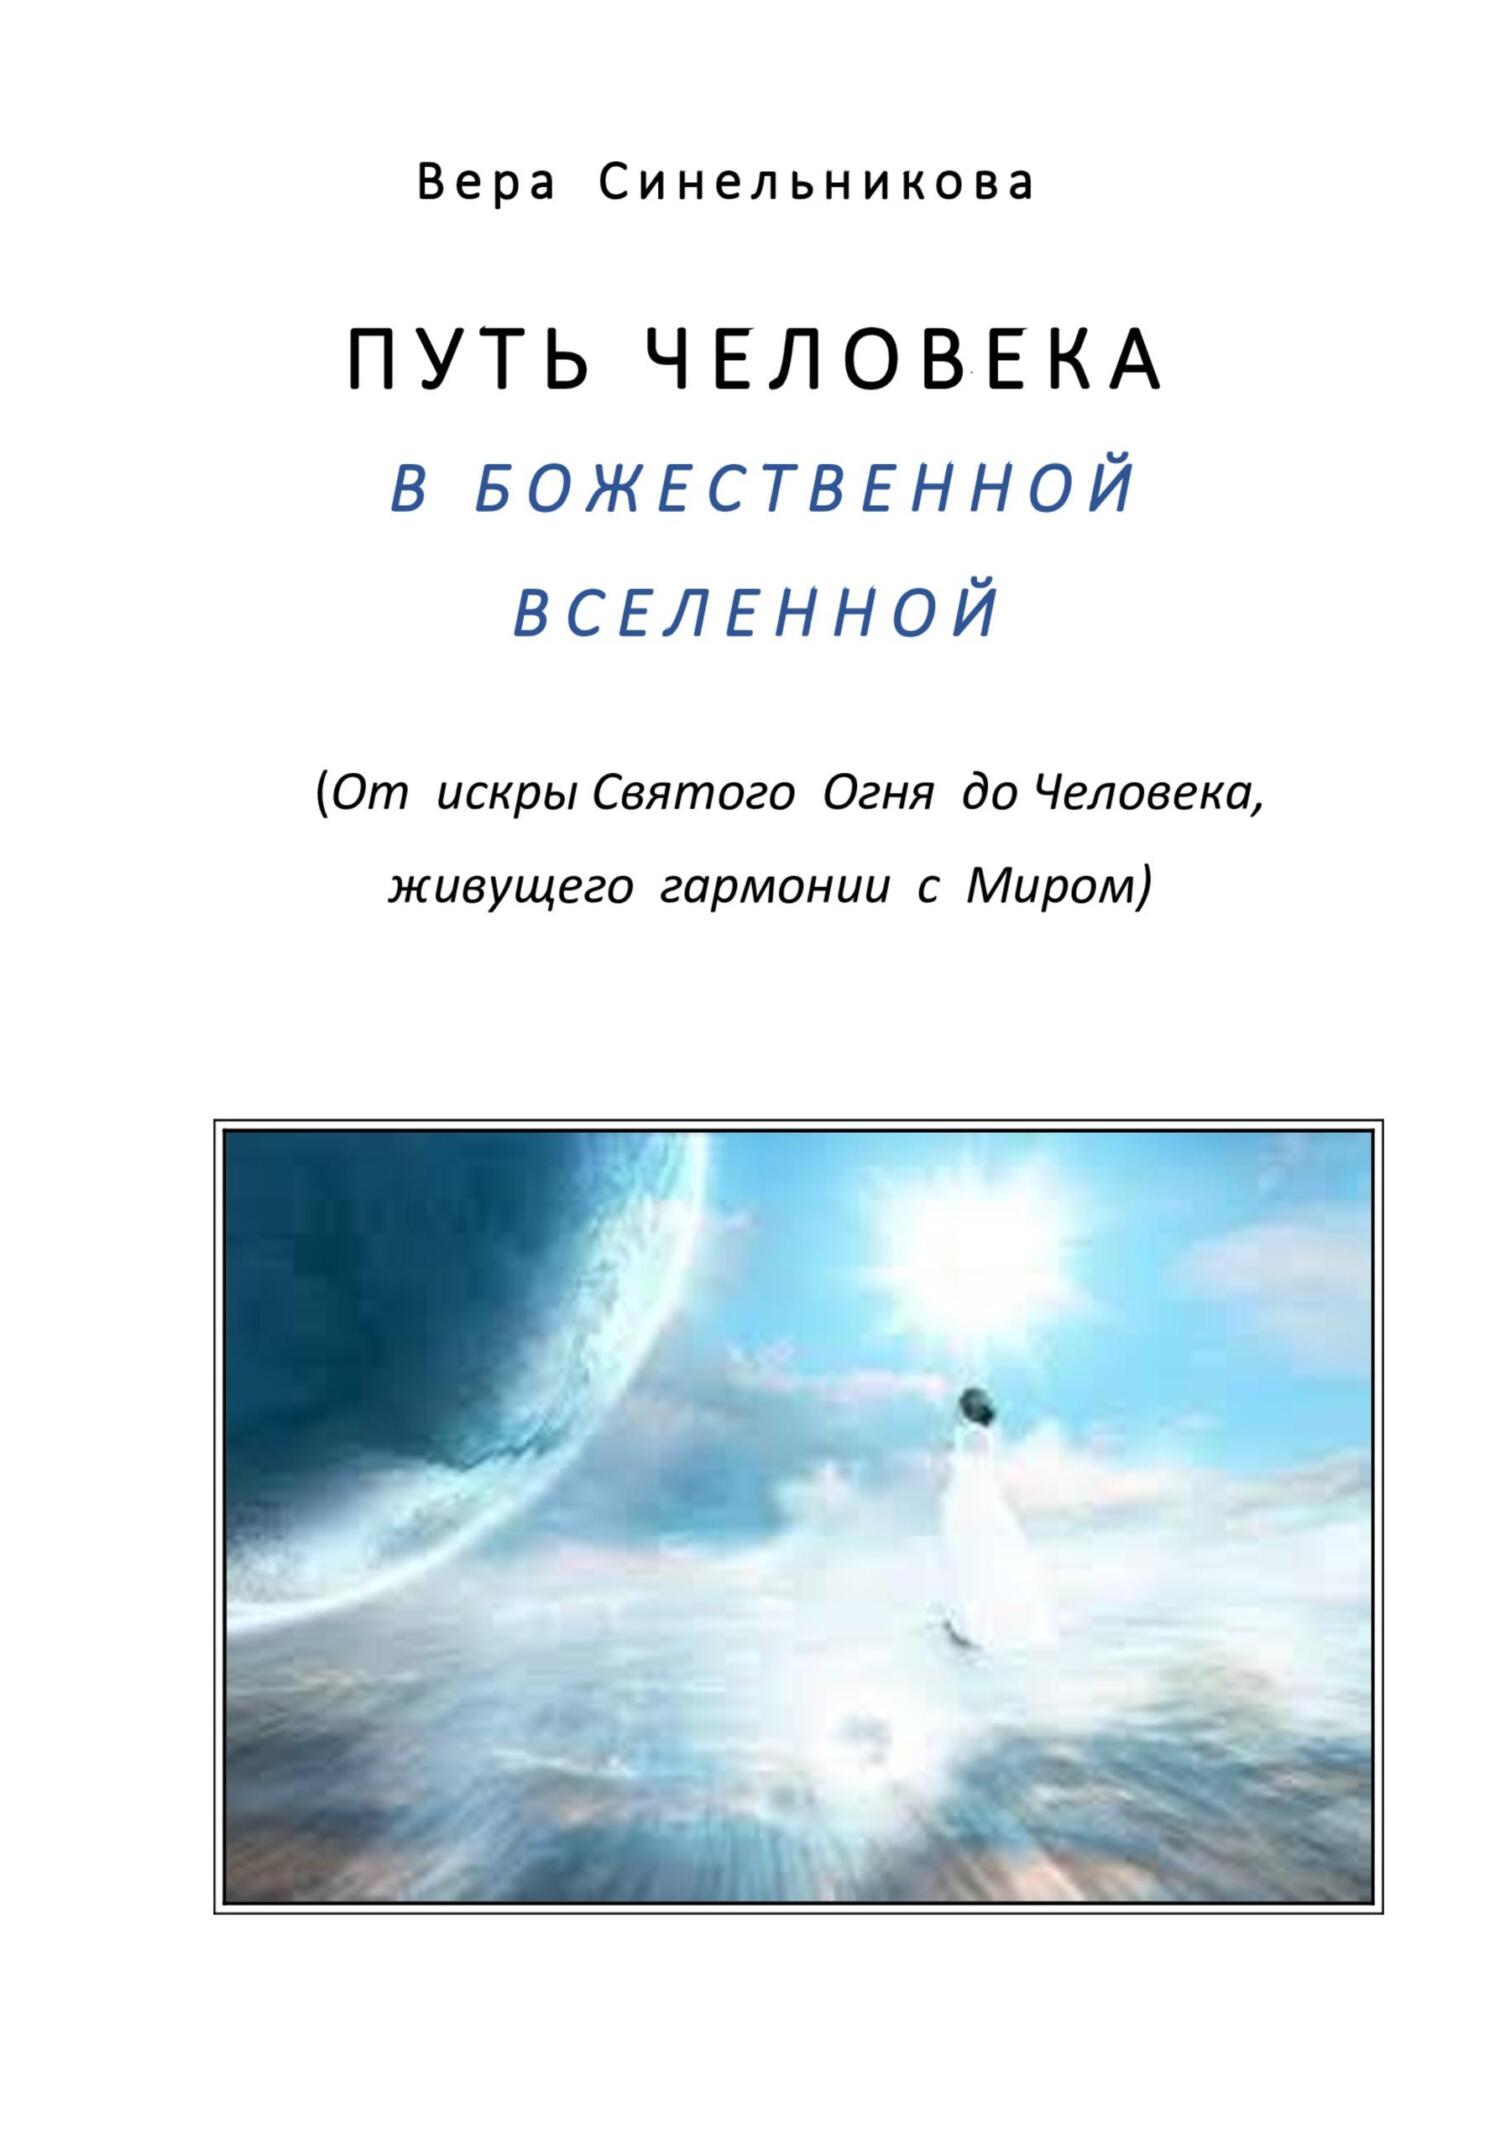 Путь человека в Божественной Вселенной - Вера Георгиевна Синельникова